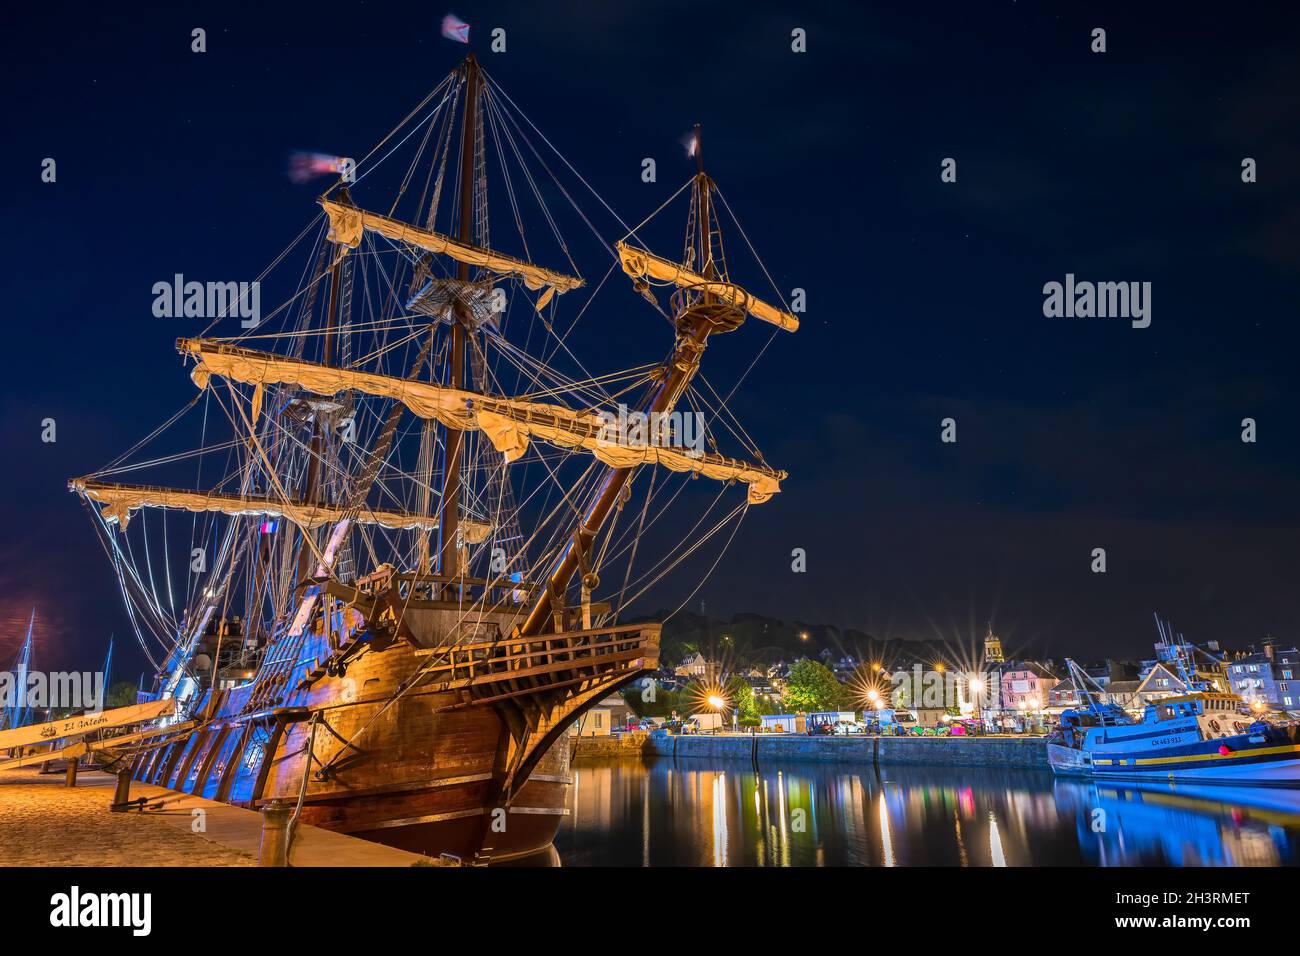 Honfleur, France - 28 juillet 2021 : scène nocturne avec un navire espagnol El Galeon, une reconstruction à grande échelle du populaire cargo de voile du XVIe siècle ves Banque D'Images